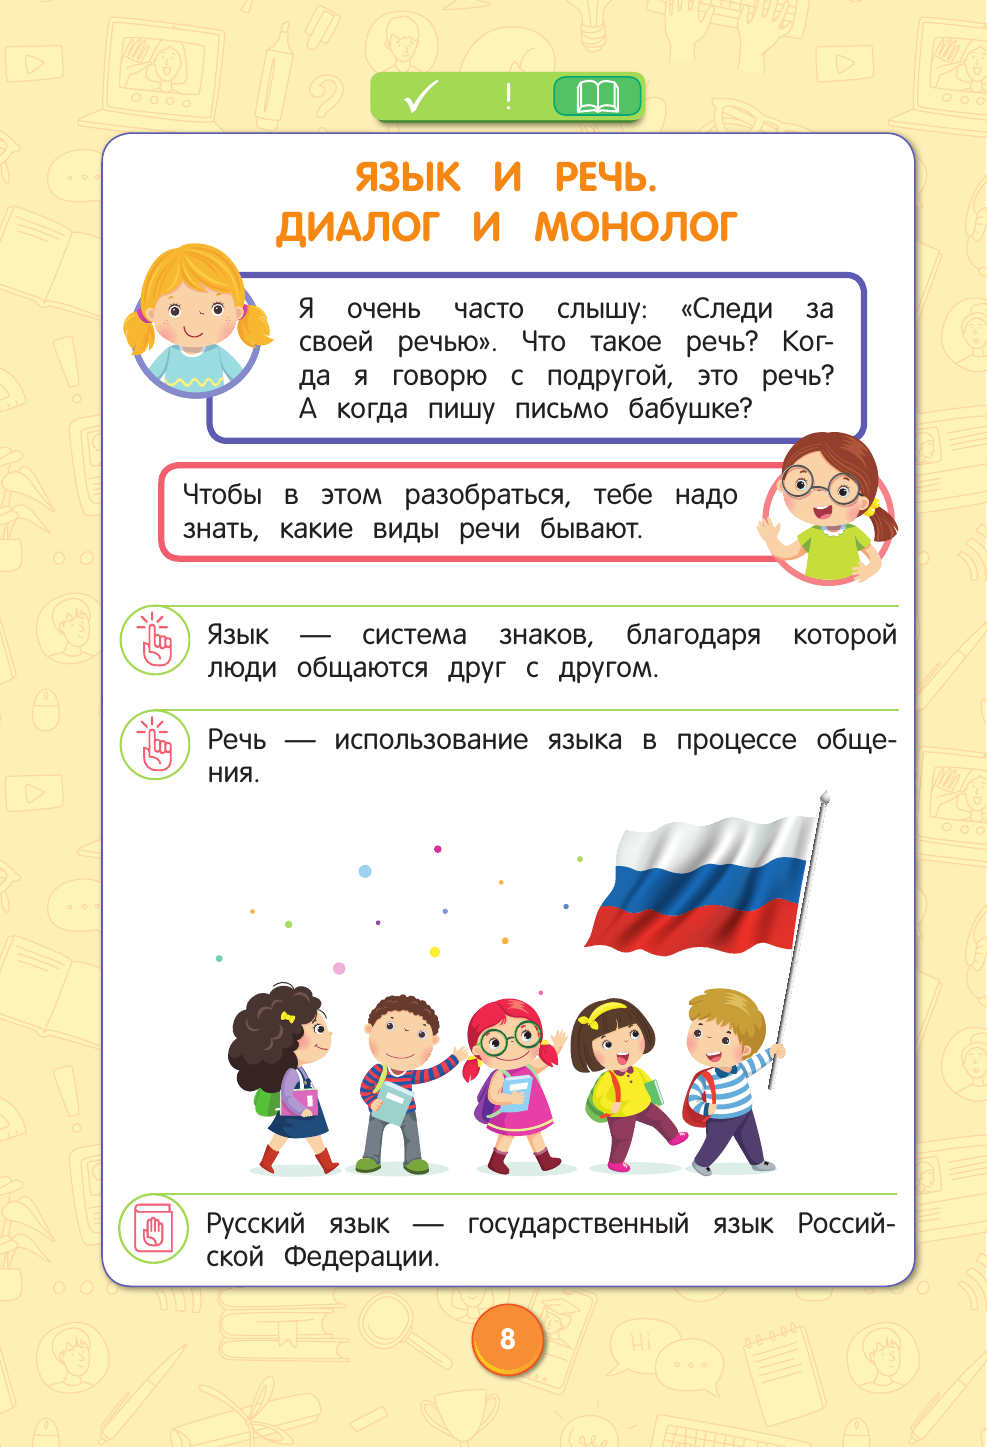 Русский язык. Полный курс. 1-5 классы - фото №12